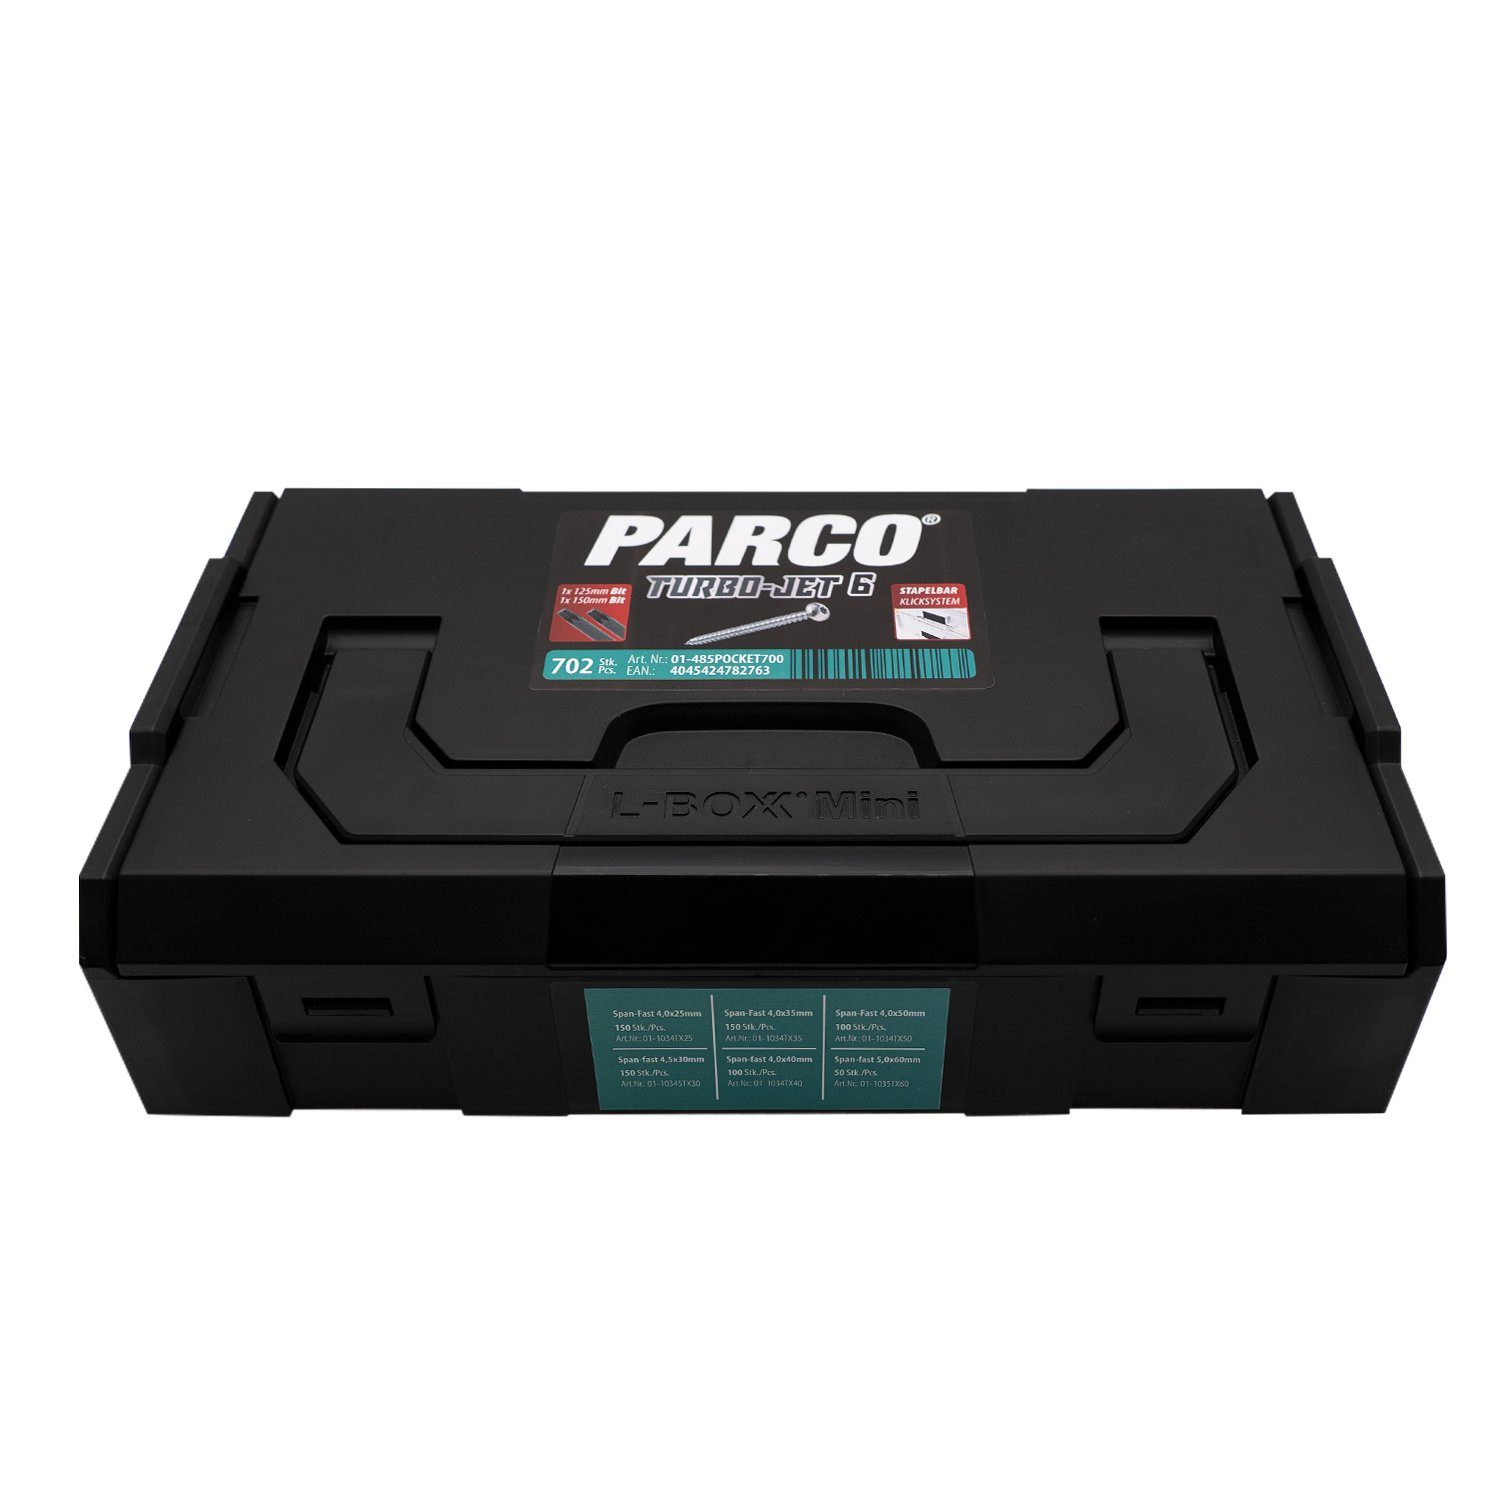 PARCO Sortiment Teile Schrauben- Taschenlochschrauben Dübel-Set 700 und